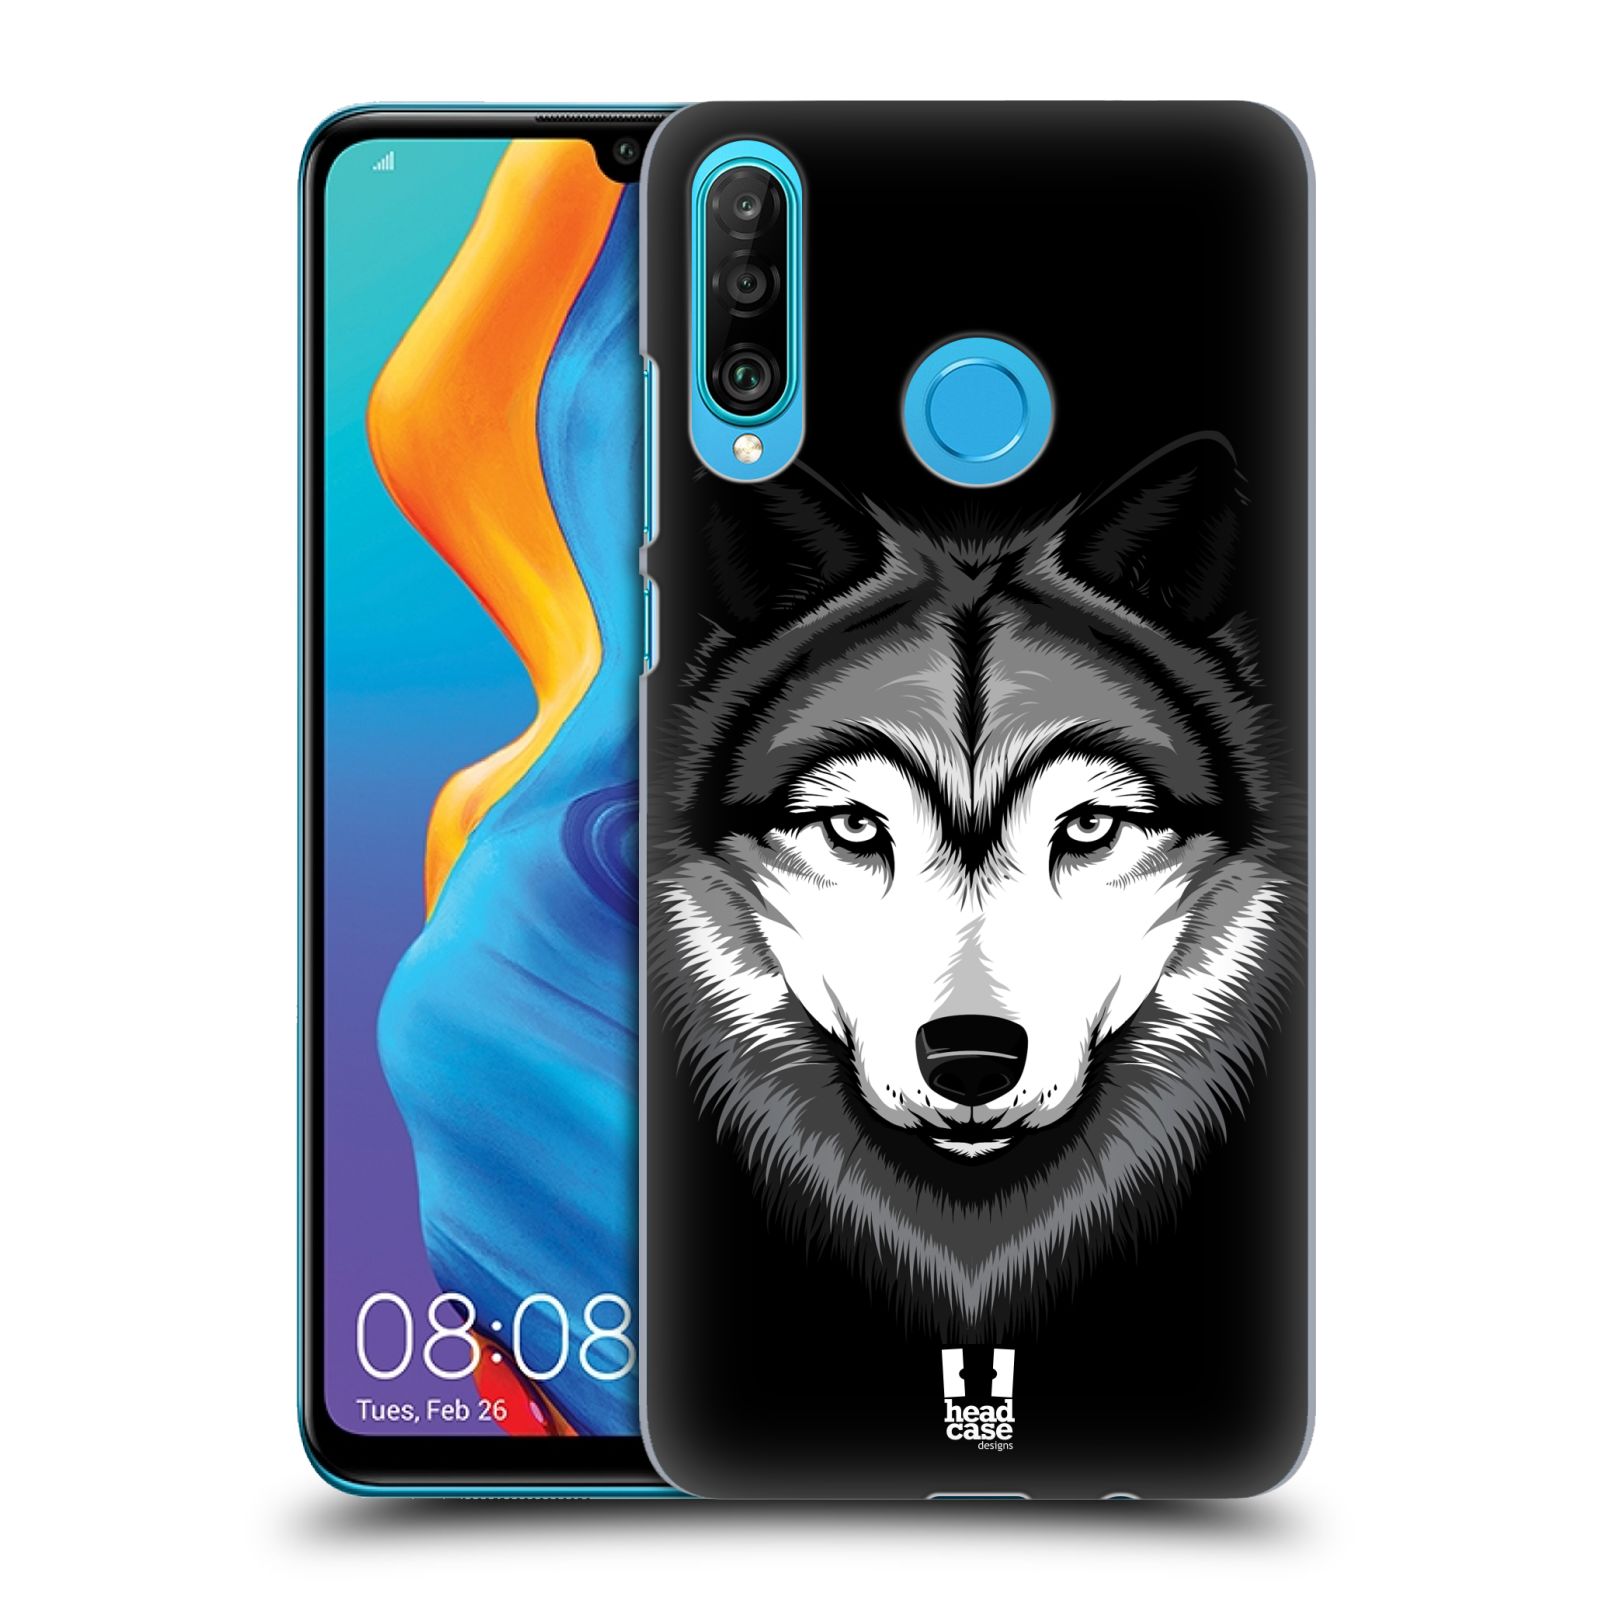 Pouzdro na mobil Huawei P30 LITE - HEAD CASE - vzor Zvíře kreslená tvář 2 vlk